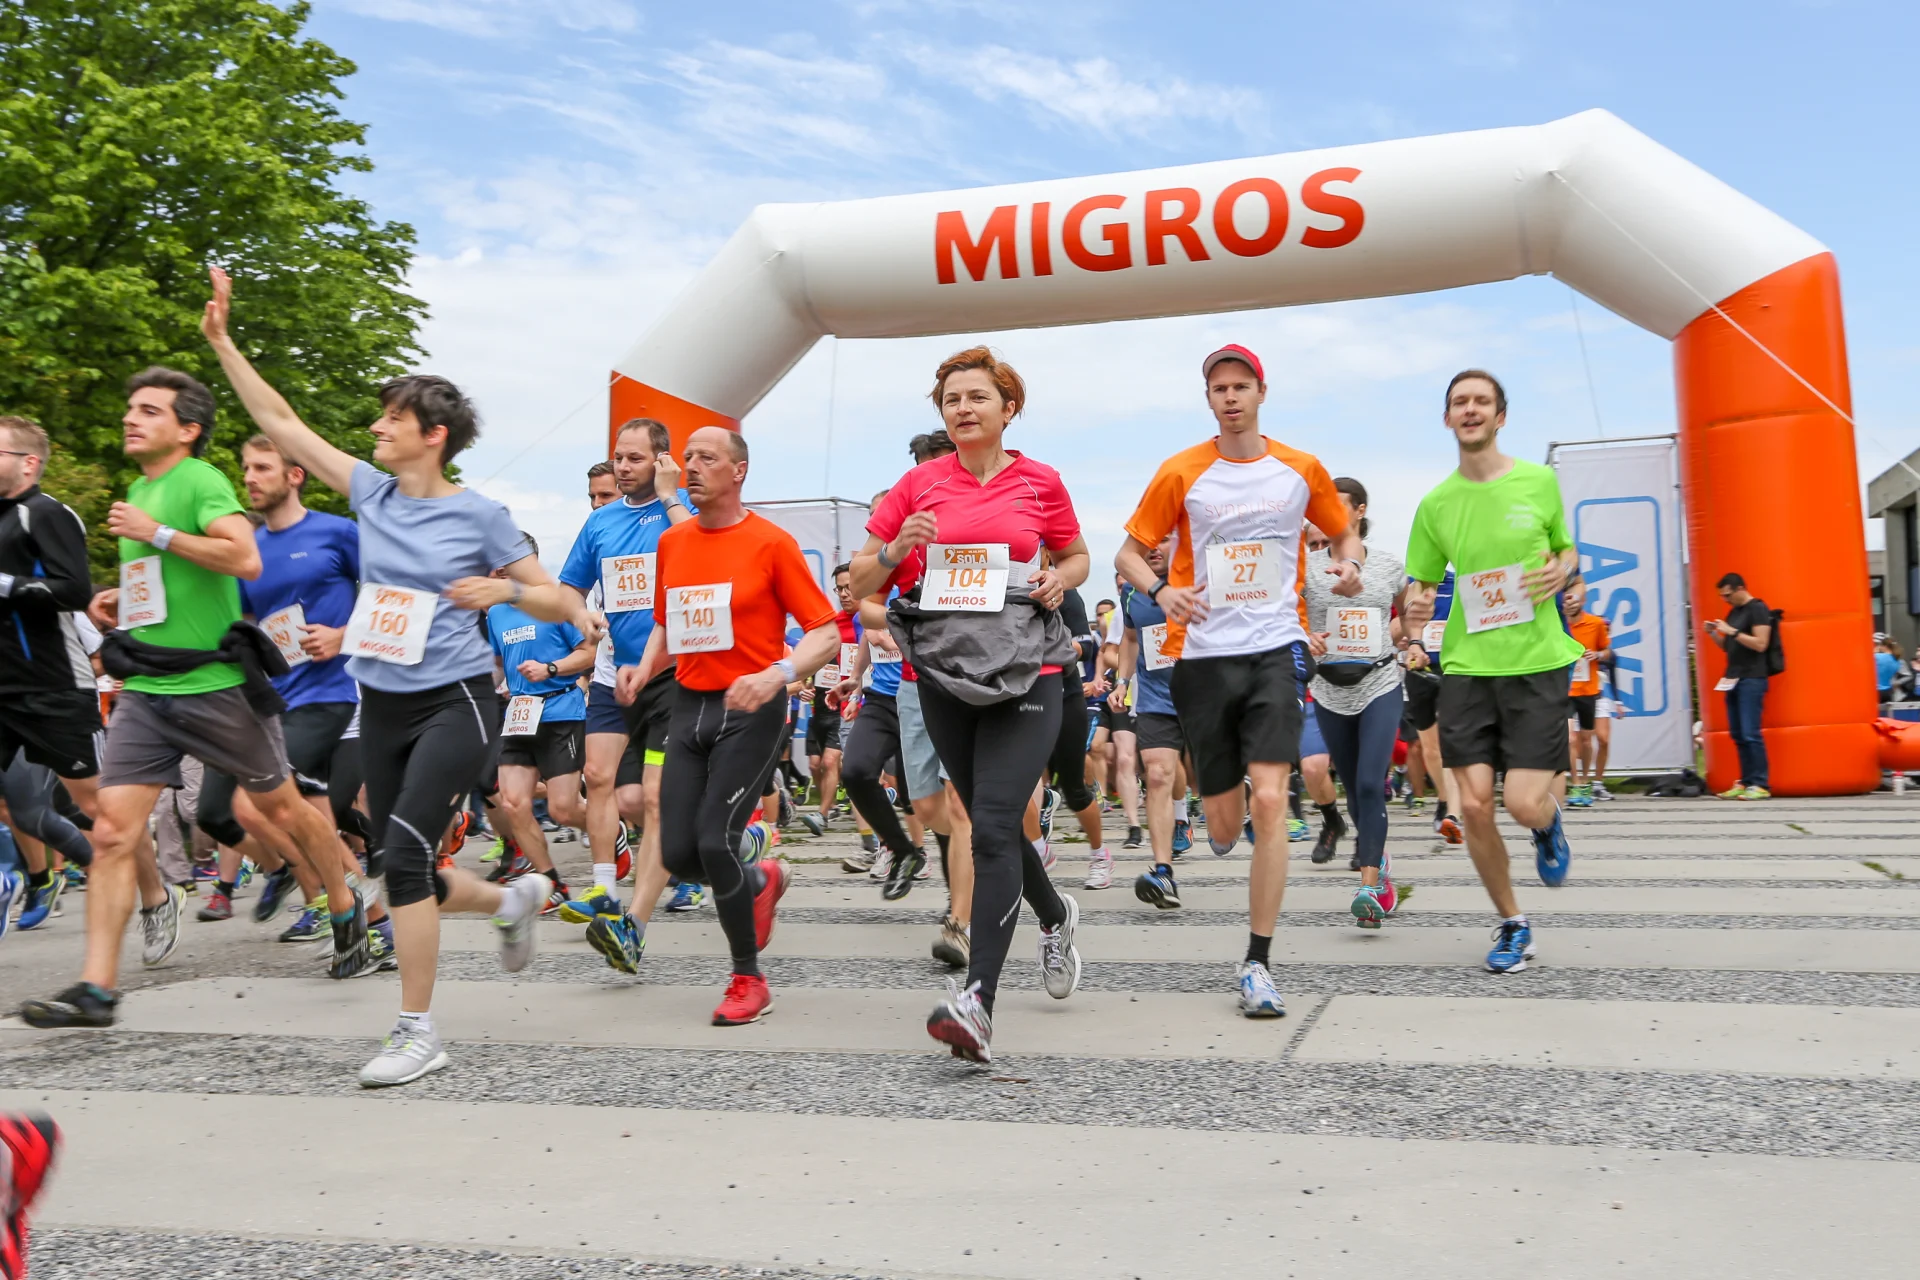 Le persone partecipanti corrono sotto un arco gonfiabile della Migros.